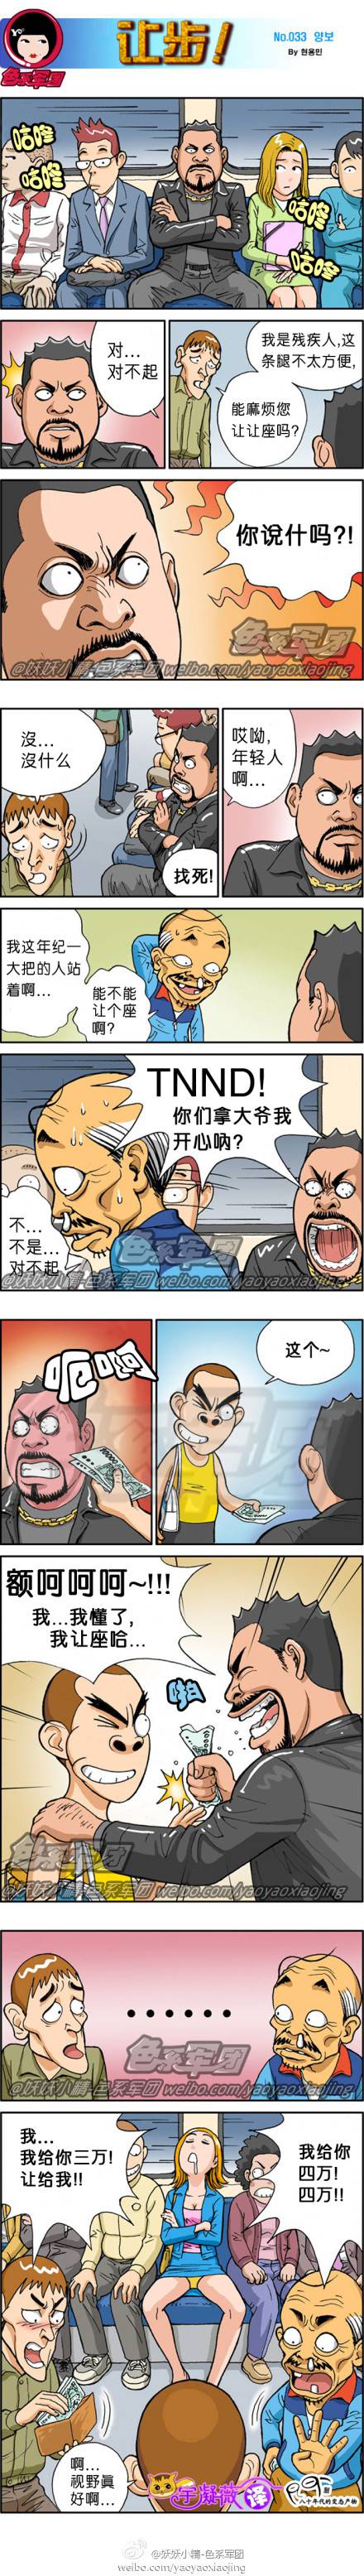 邪恶漫画爆笑囧图第27刊：瞧瞧